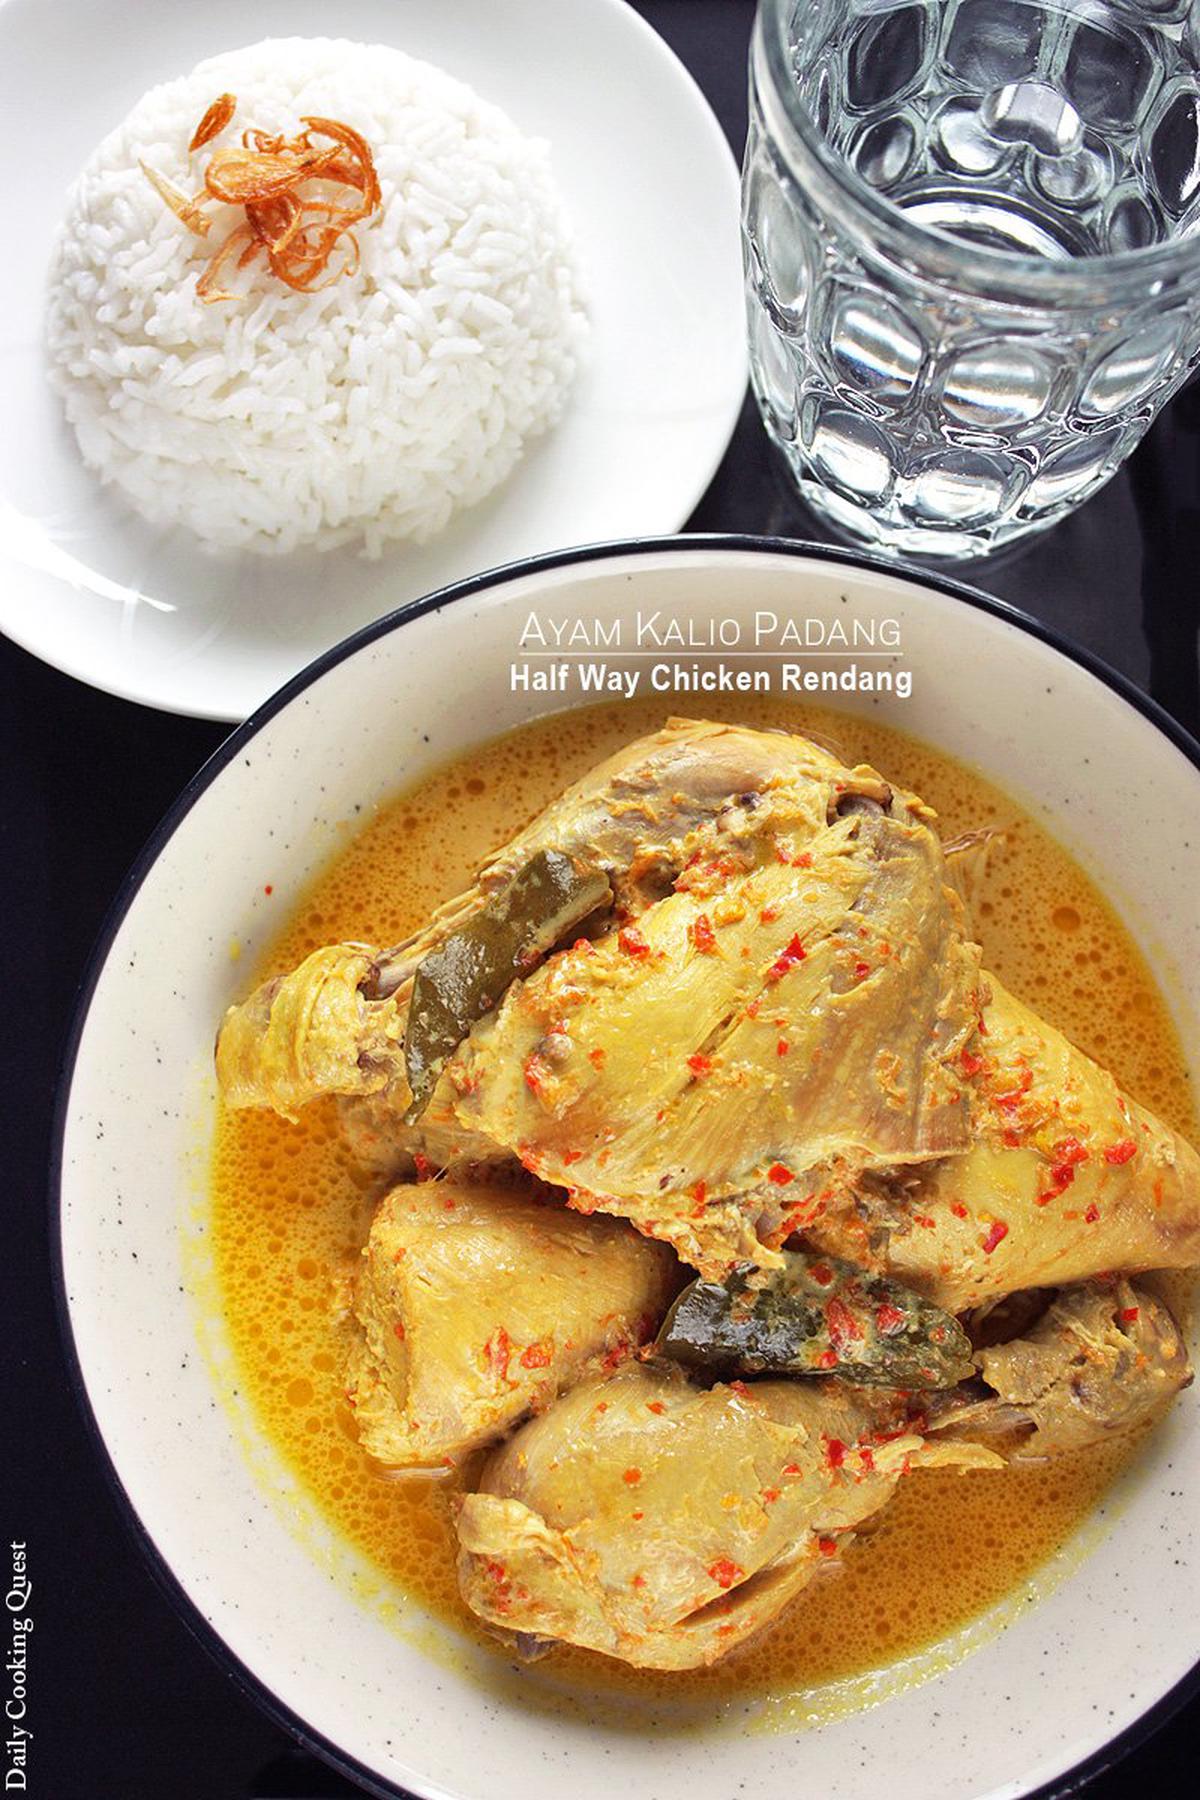 Ayam Kalio Padang - Half Way Chicken Rendang